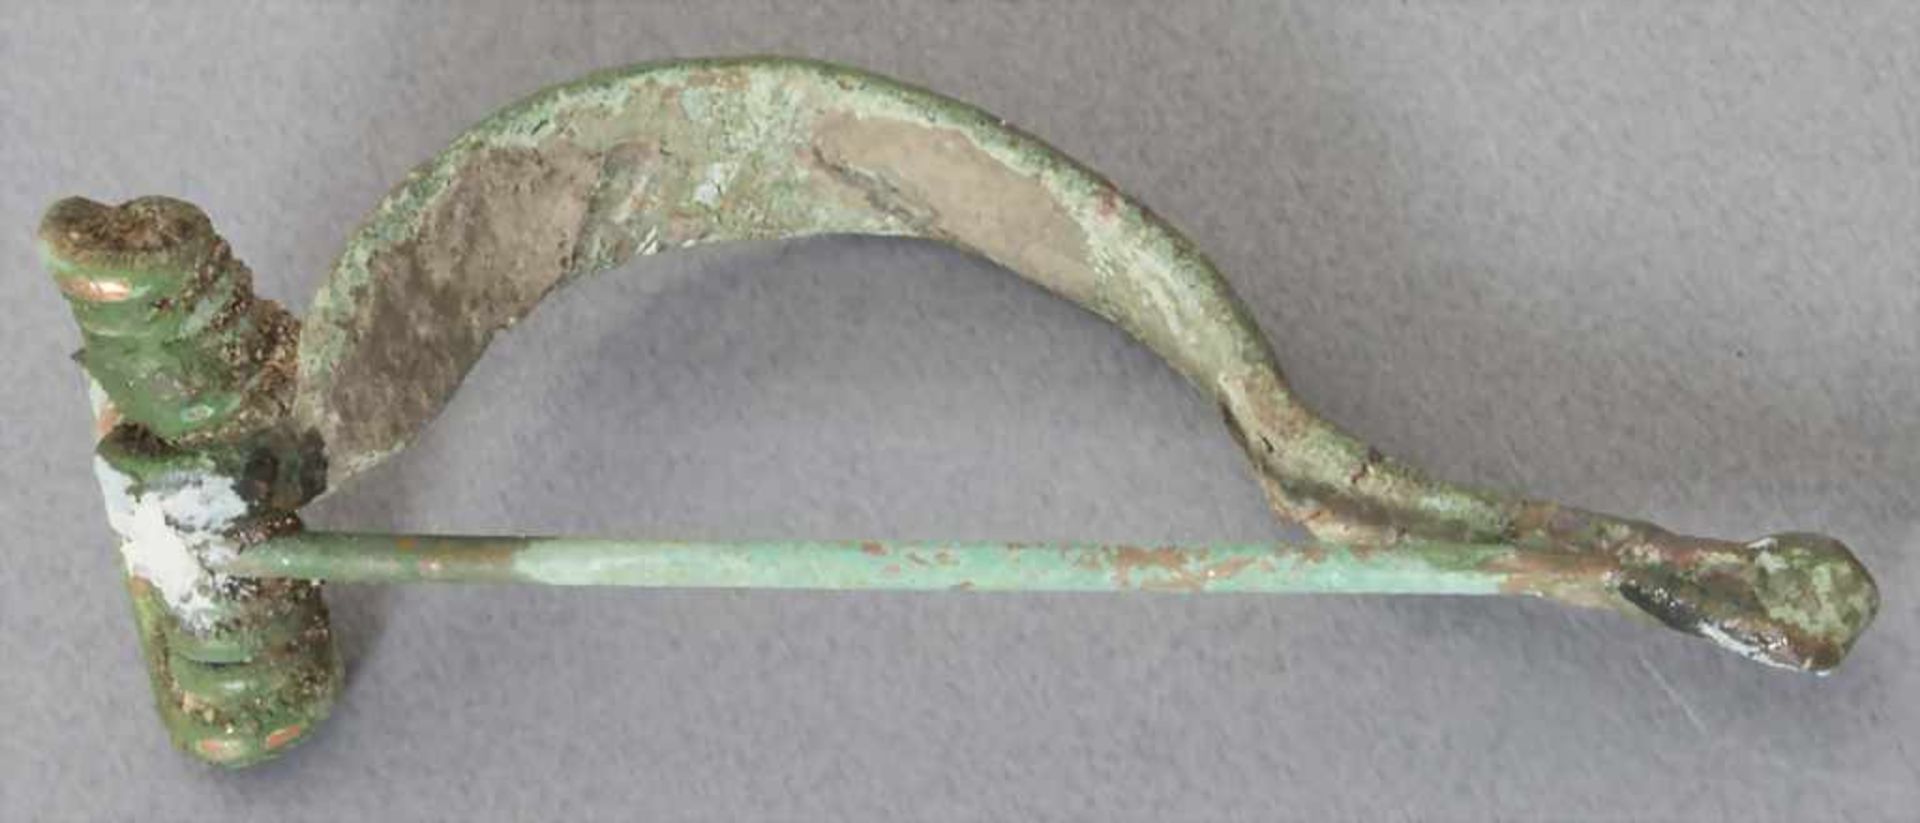 Keltische Fibel / A celtic fibulaMaterial: Bronze,Länge: 5,2 cm,Zustand: gut, alt restauriert, - Bild 2 aus 2